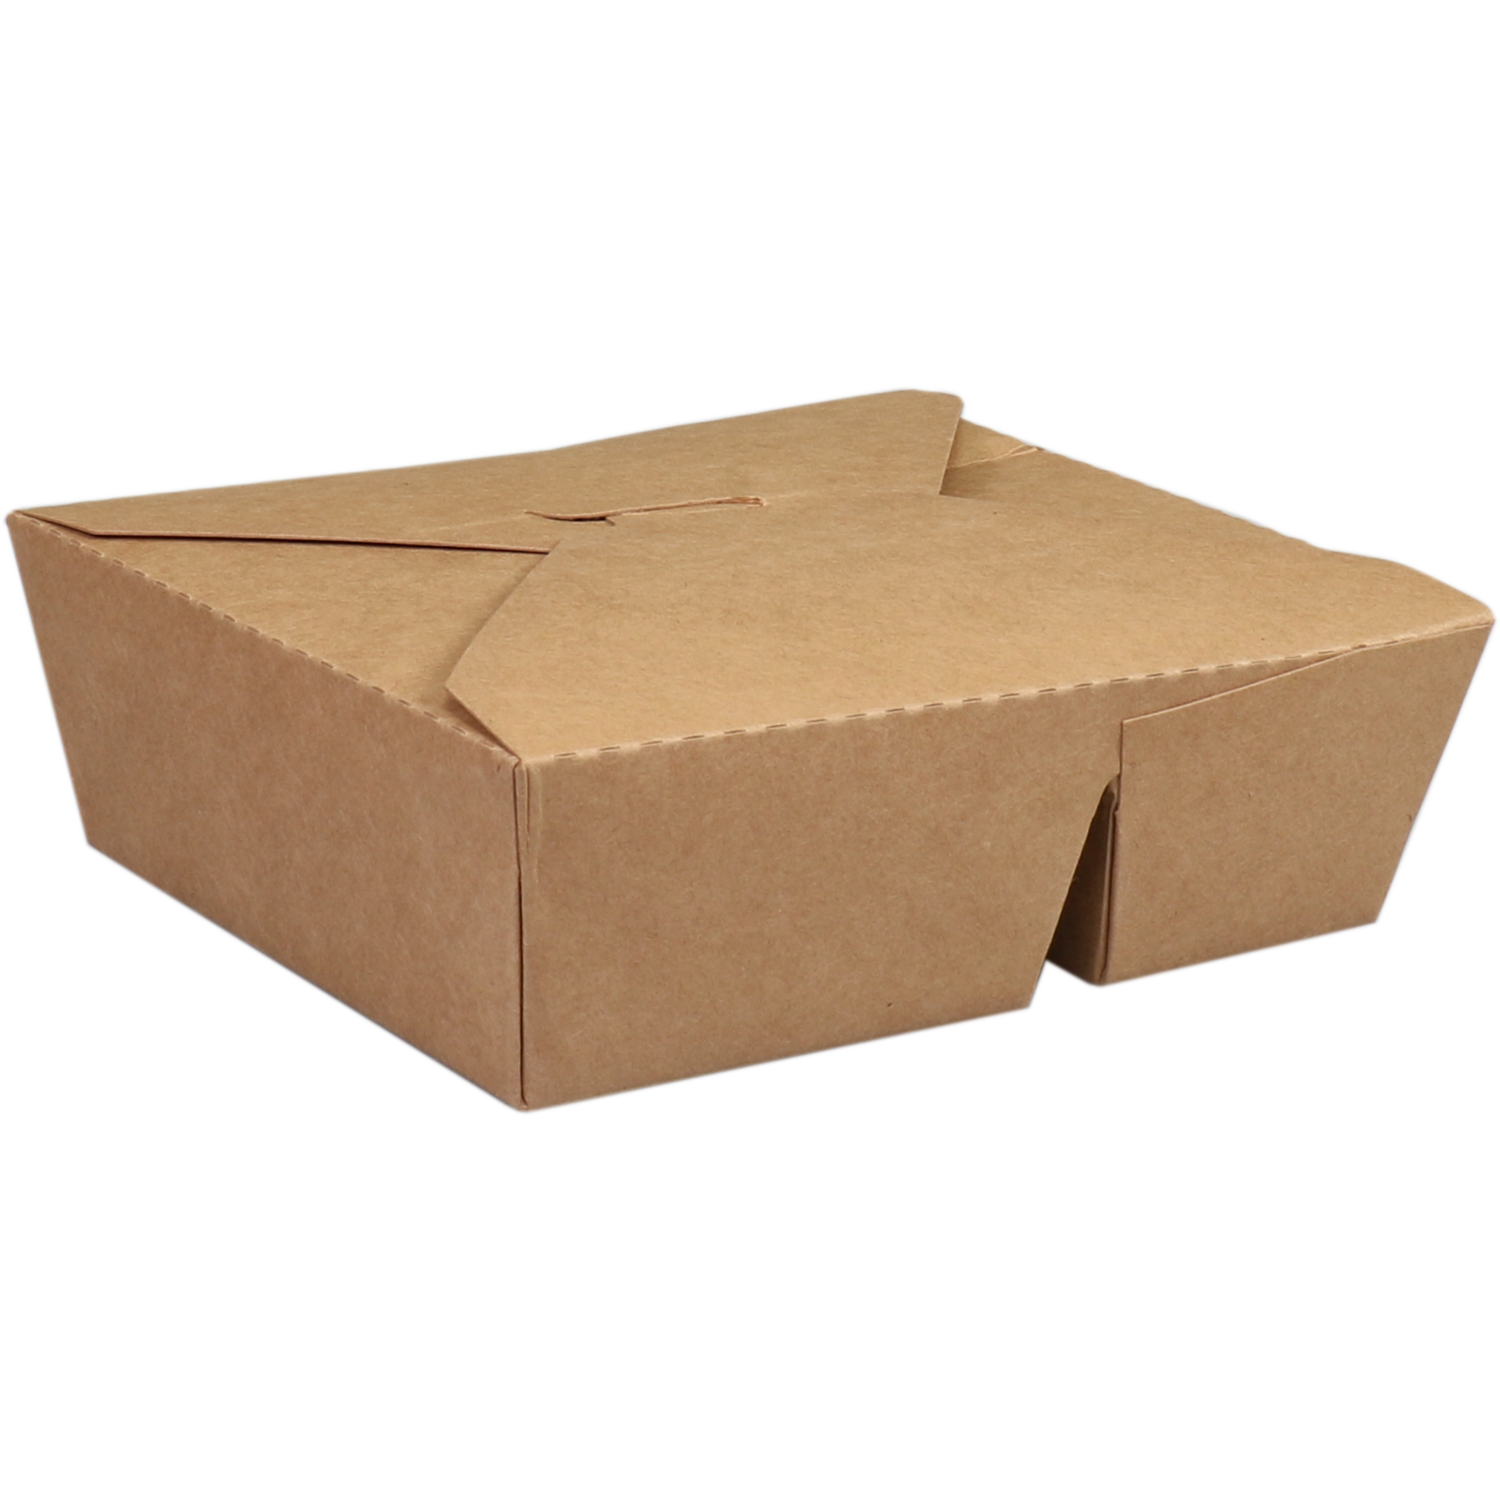 Biodore Bak, Kraft/PLA, 2-vaks, maaltijdbox, 168x138x51mm, bruin 1